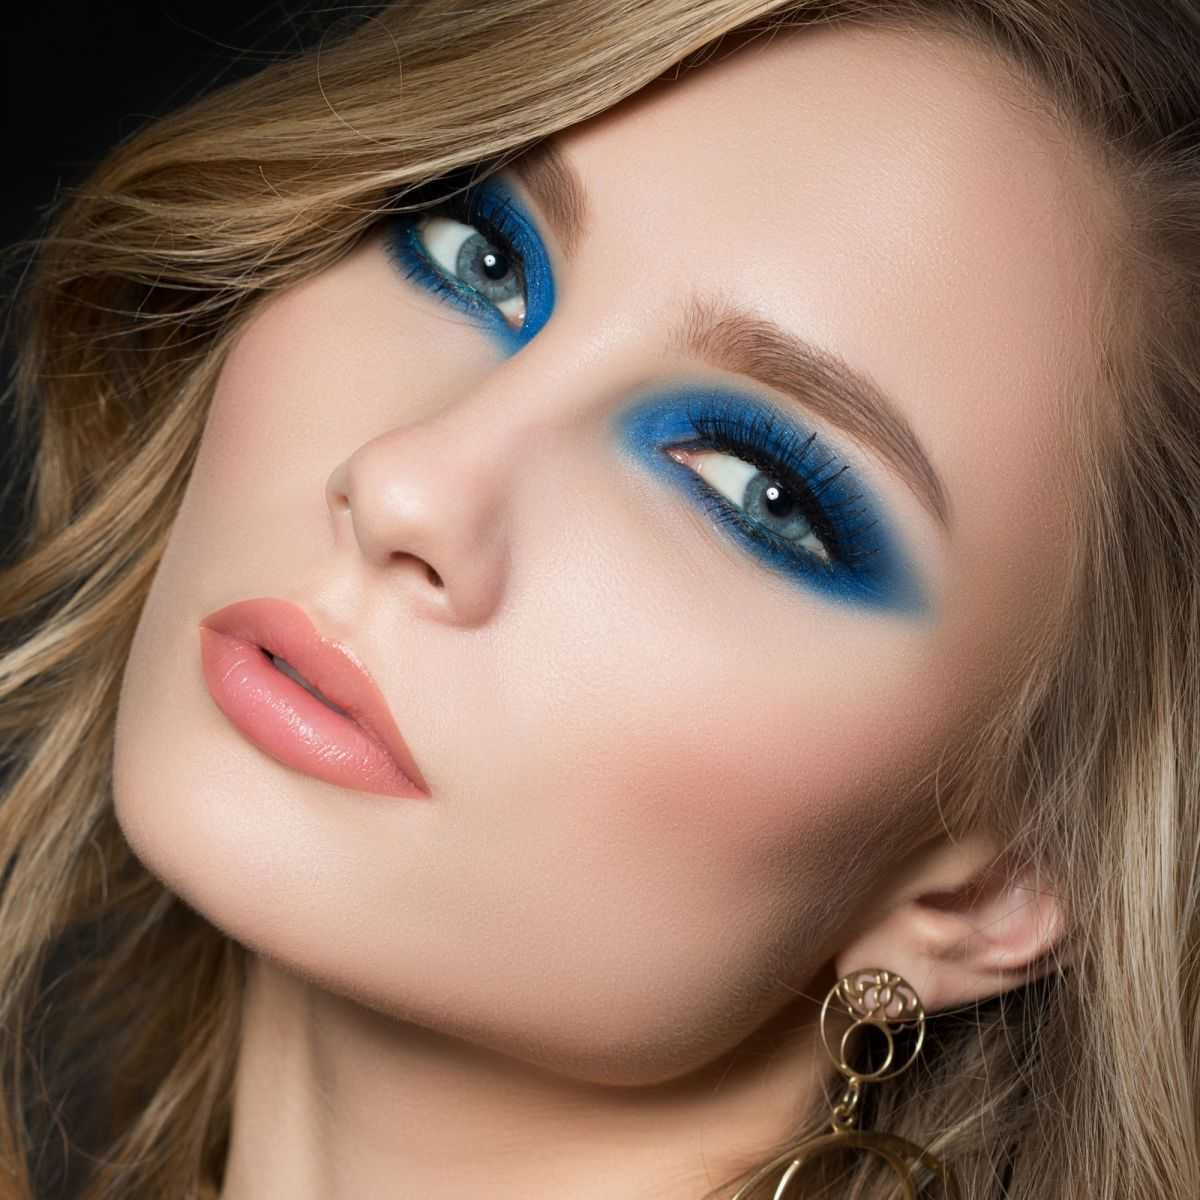 Макияж в голубых тонах считается классикой Всем ли подходит такой тип макияжа Что стоит учесть при его нанесении и какие популярные бренды производят косметику в синих тонах